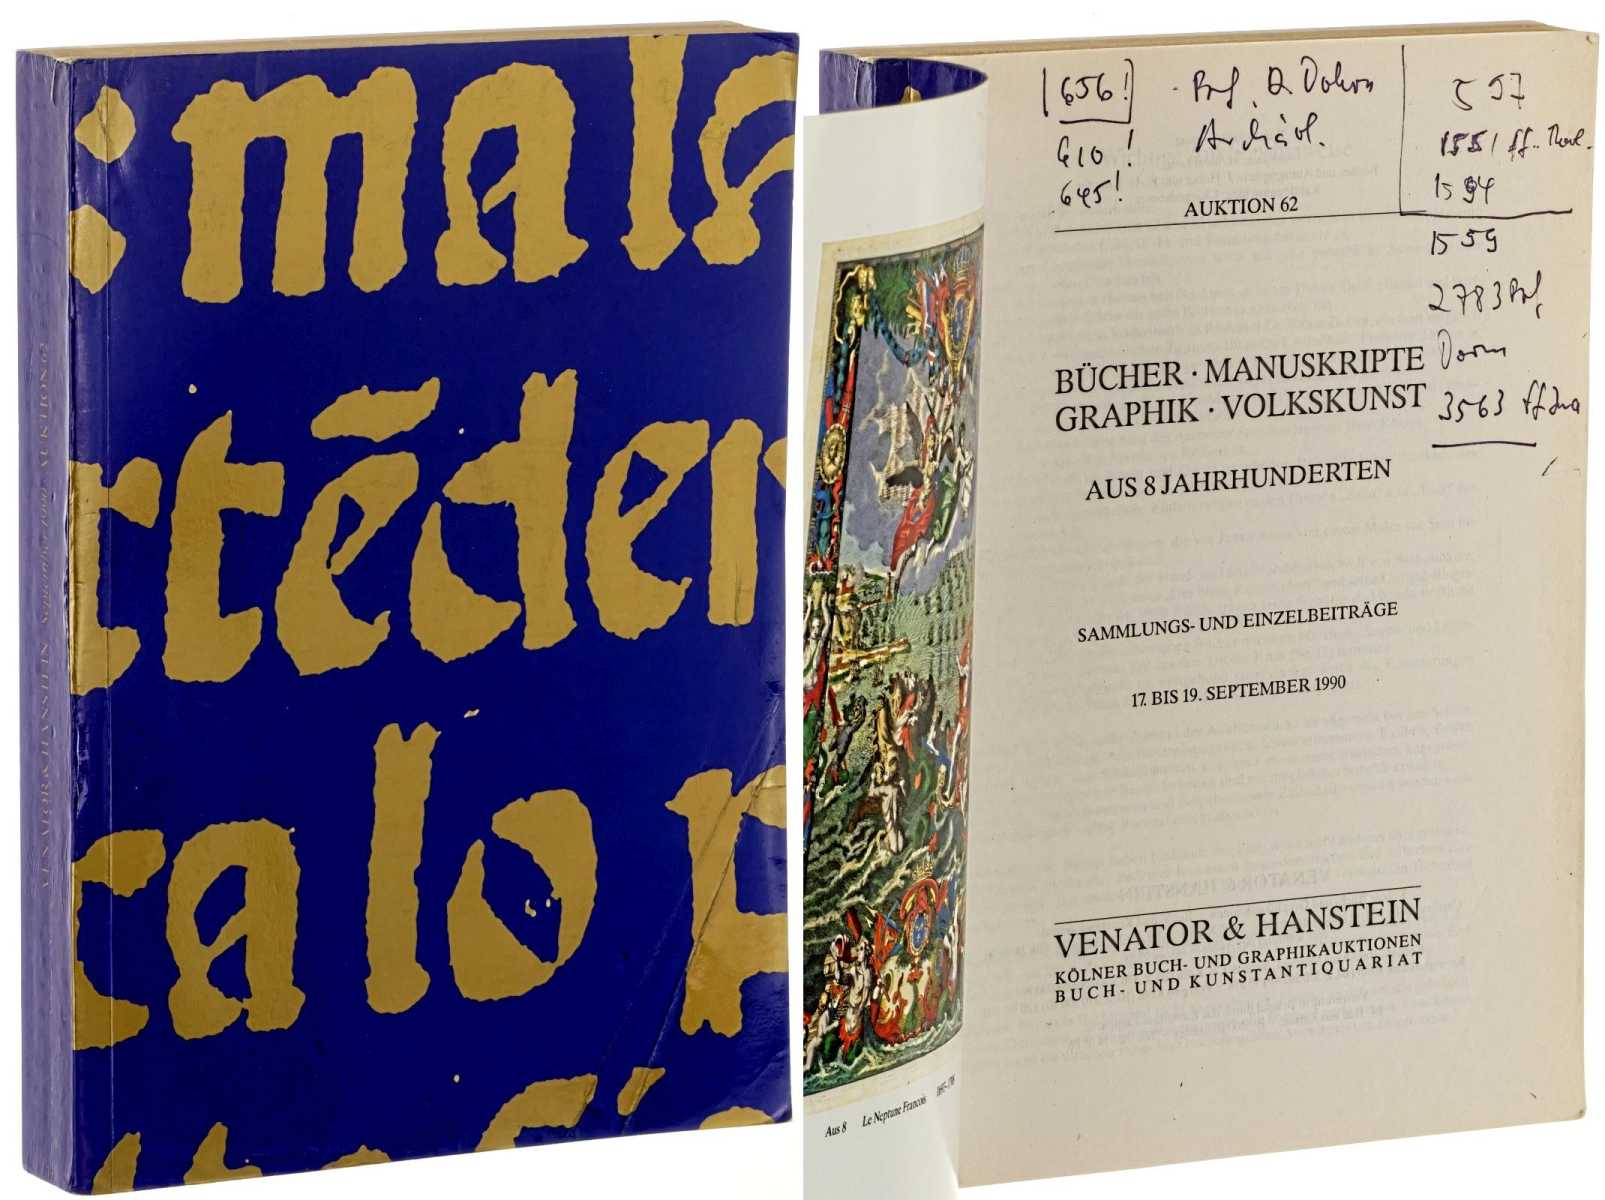 Venator & Hanstein:  Auktion 62: Bücher, Manuskripte, Graphik, Volkskunst aus 8 Jahrhunderten. Sammlungs- und Einzelbeiträge 